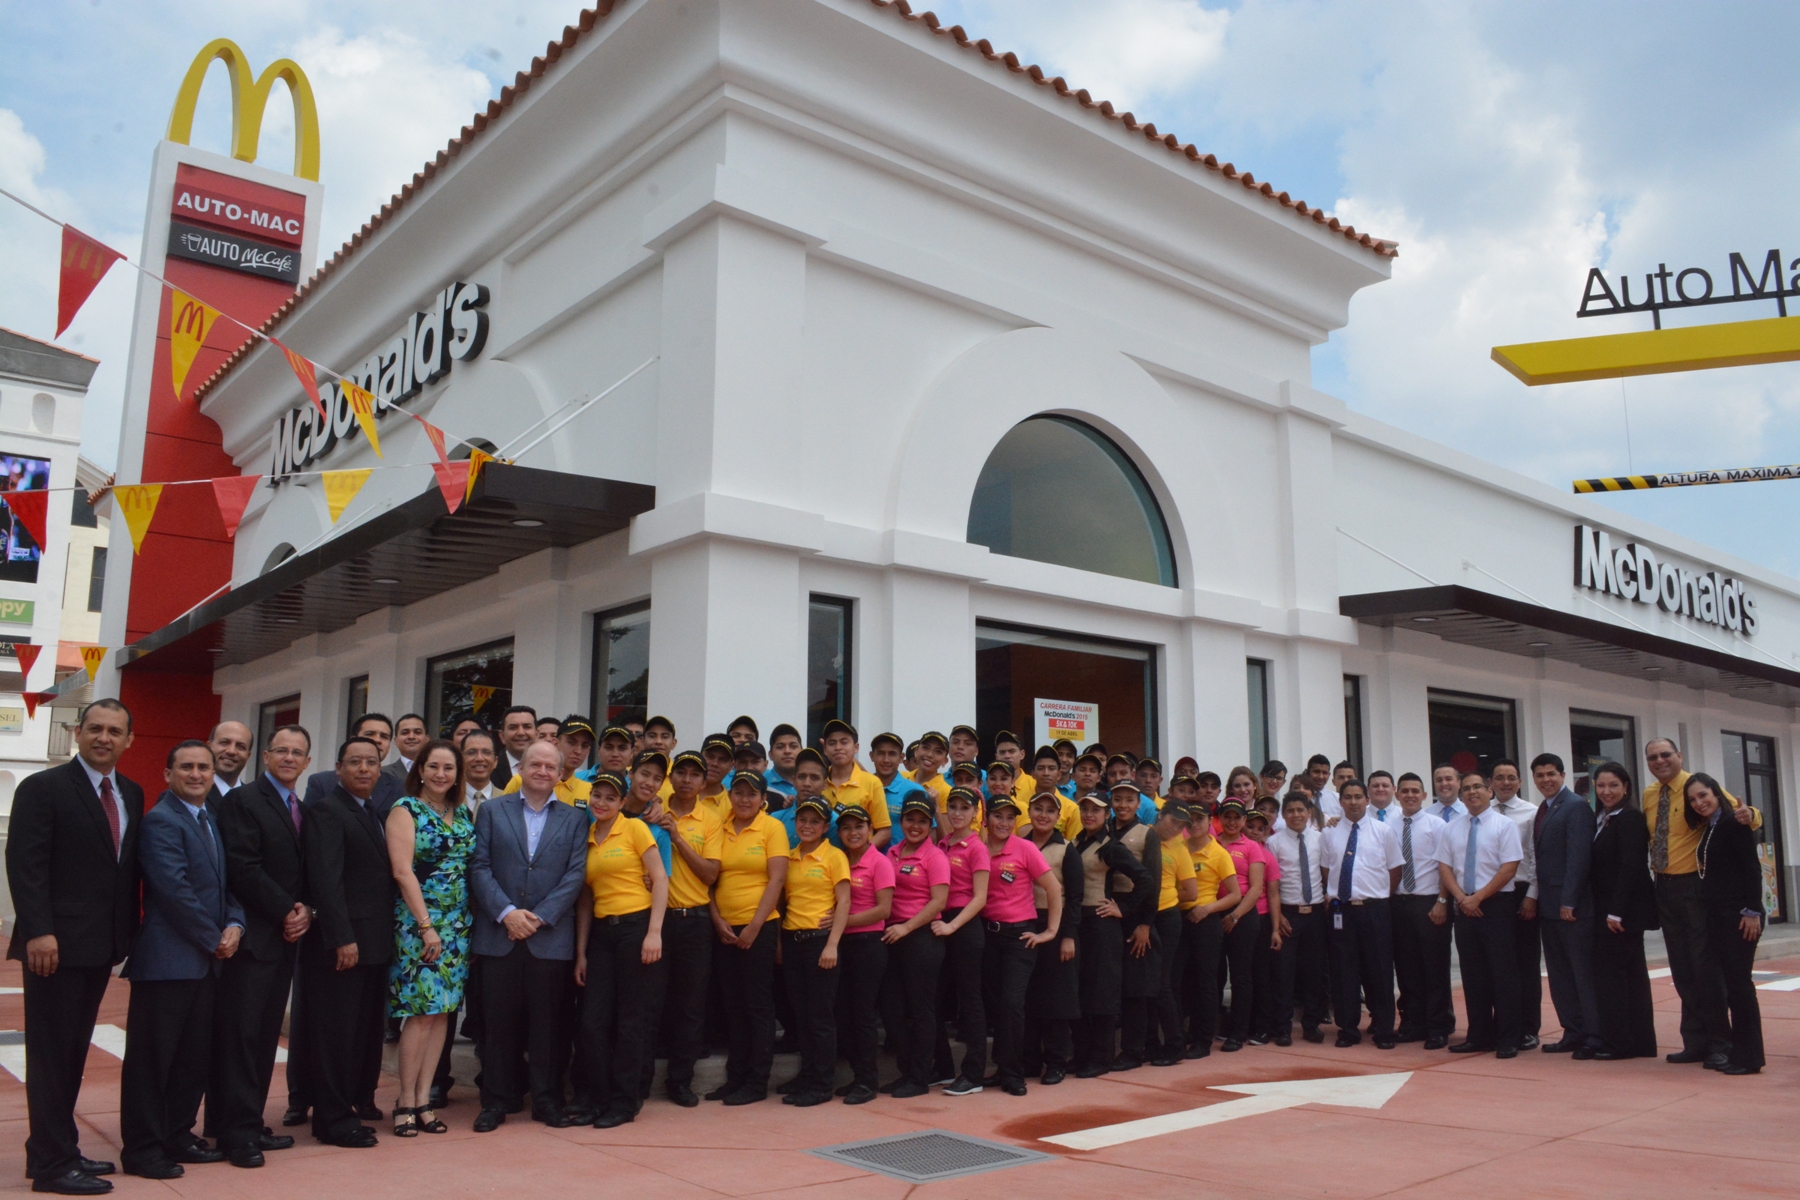 McDonald’s inaugura su nuevo restaurante en Cayalá de Guatemala